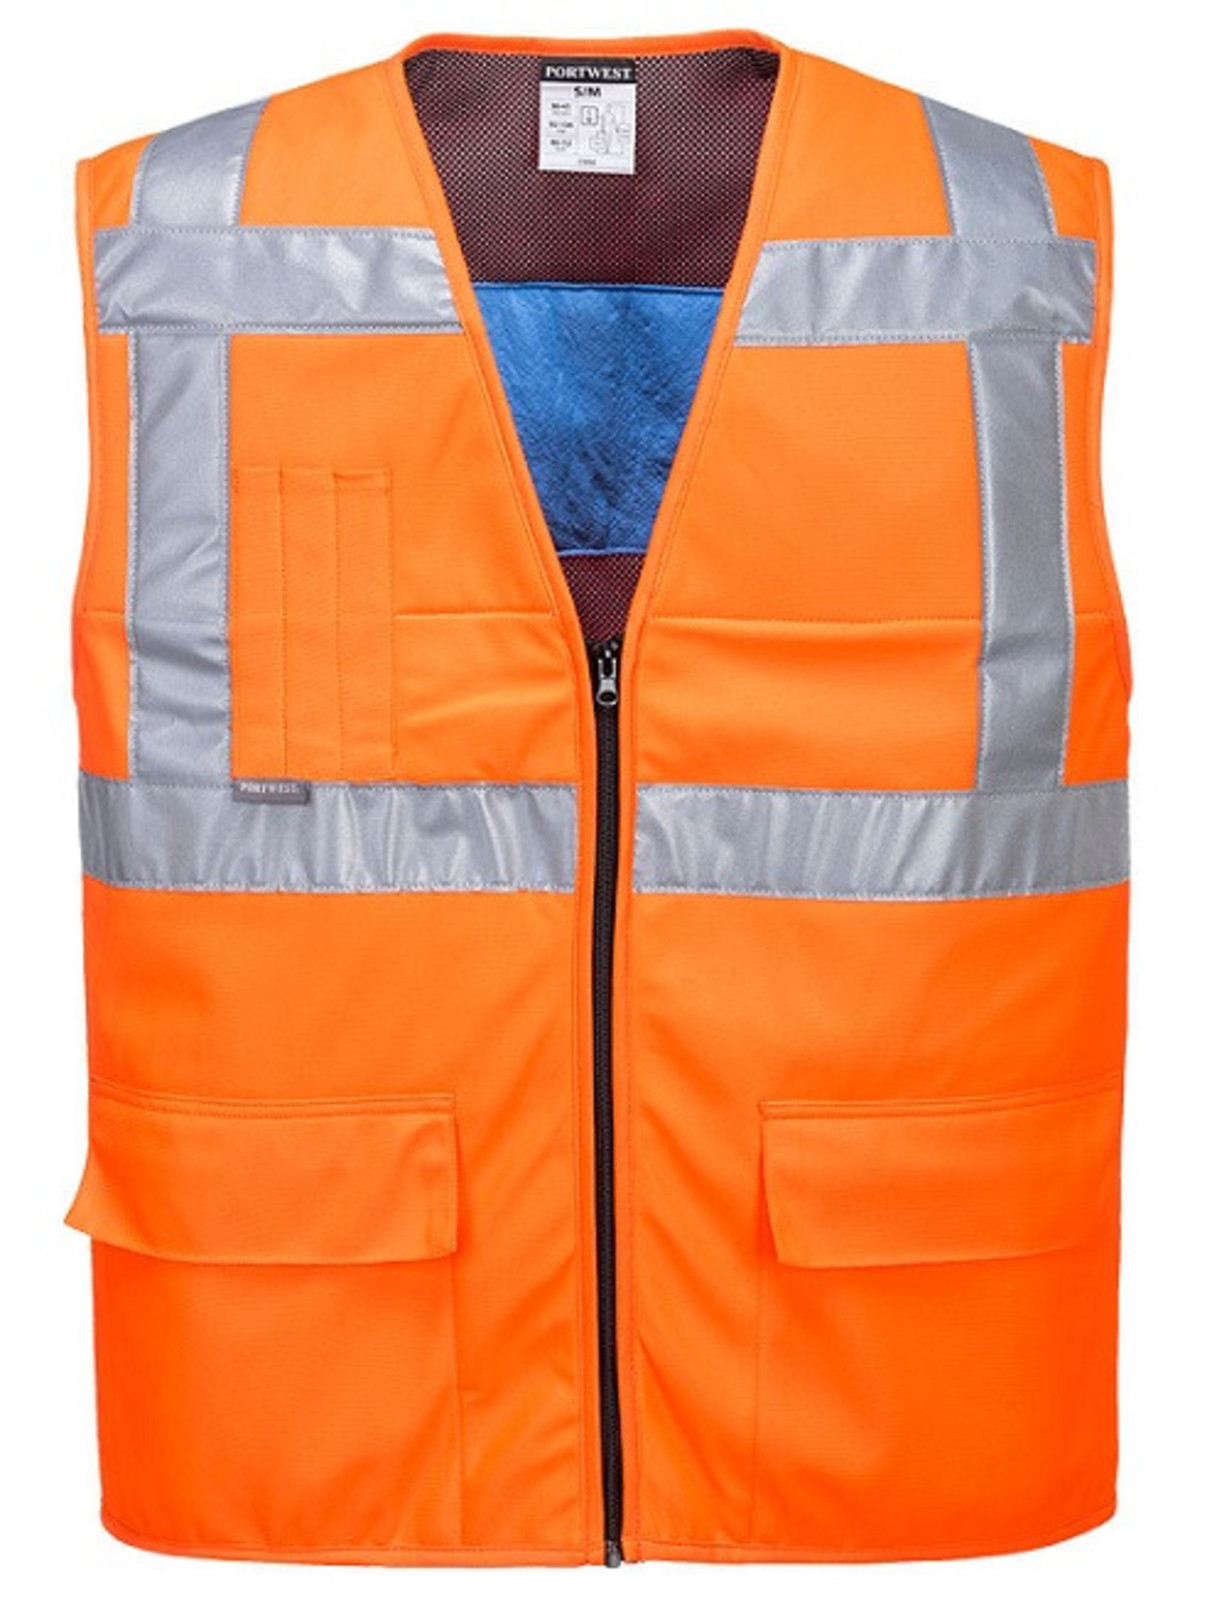 Chladiaca reflexná vesta Portwest CV02 - veľkosť: L/XL, farba: oranžová